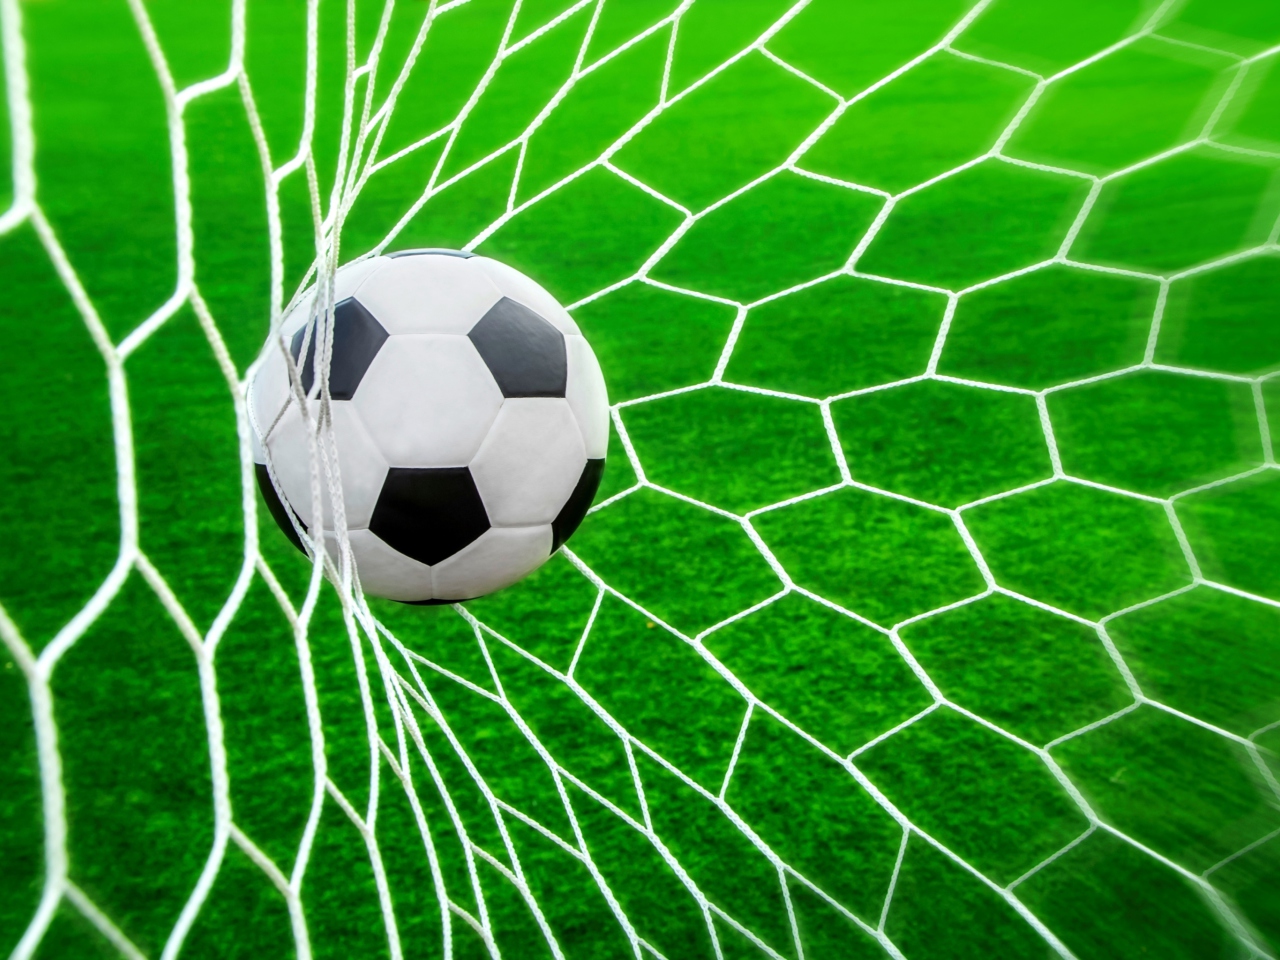 Ball In Goal Net wallpaper 1280x960